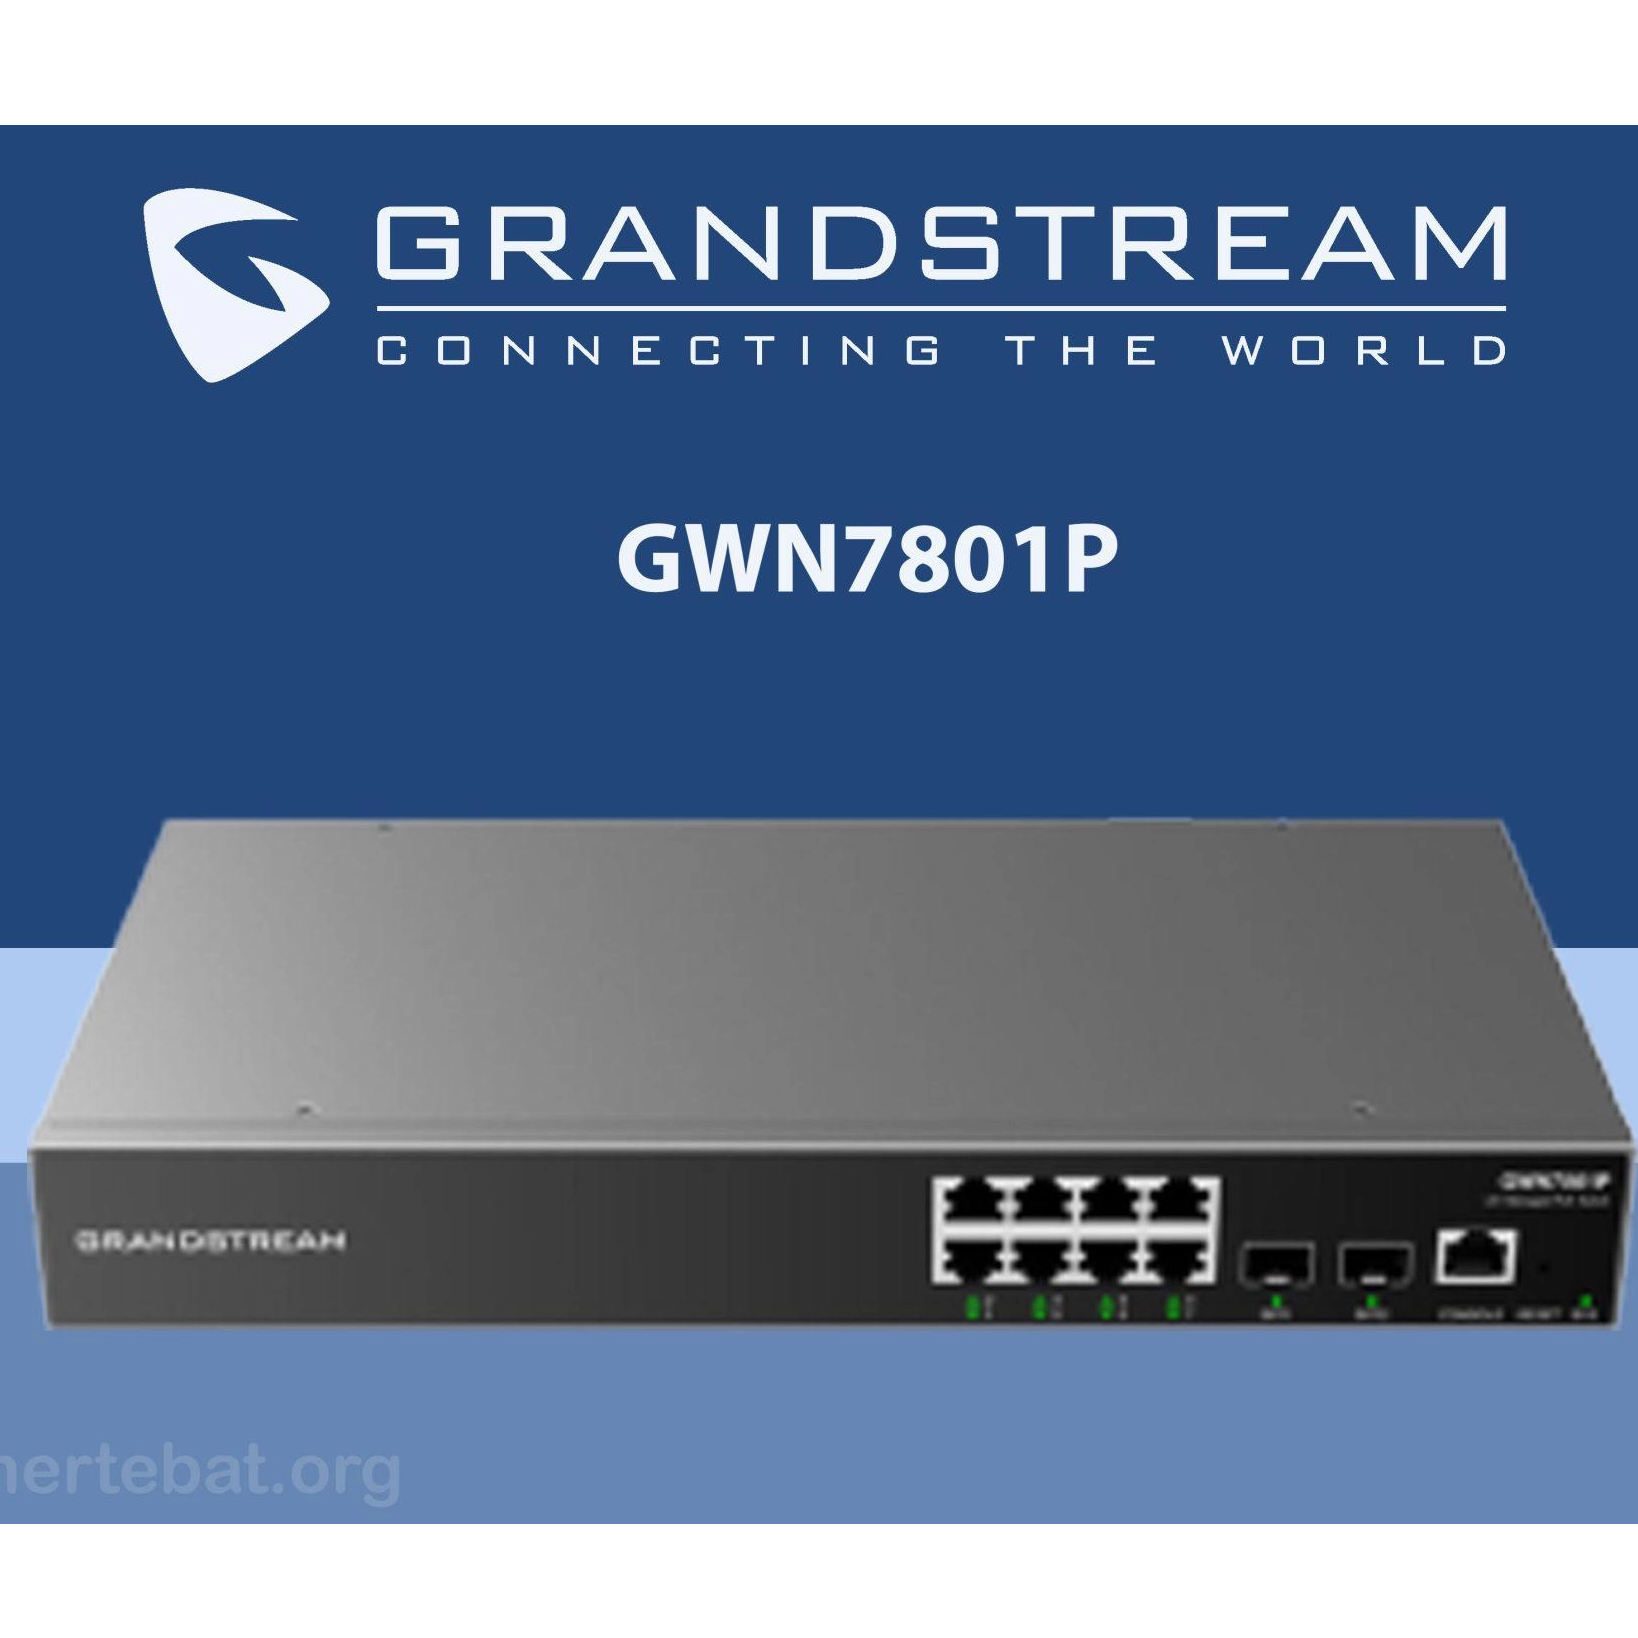 Grandstream GWN7801P Enterprise 8-Port Gigabit L2+ Managed PoE/PoE+ Switch with 2 Gigabit SFP Uplink Ports